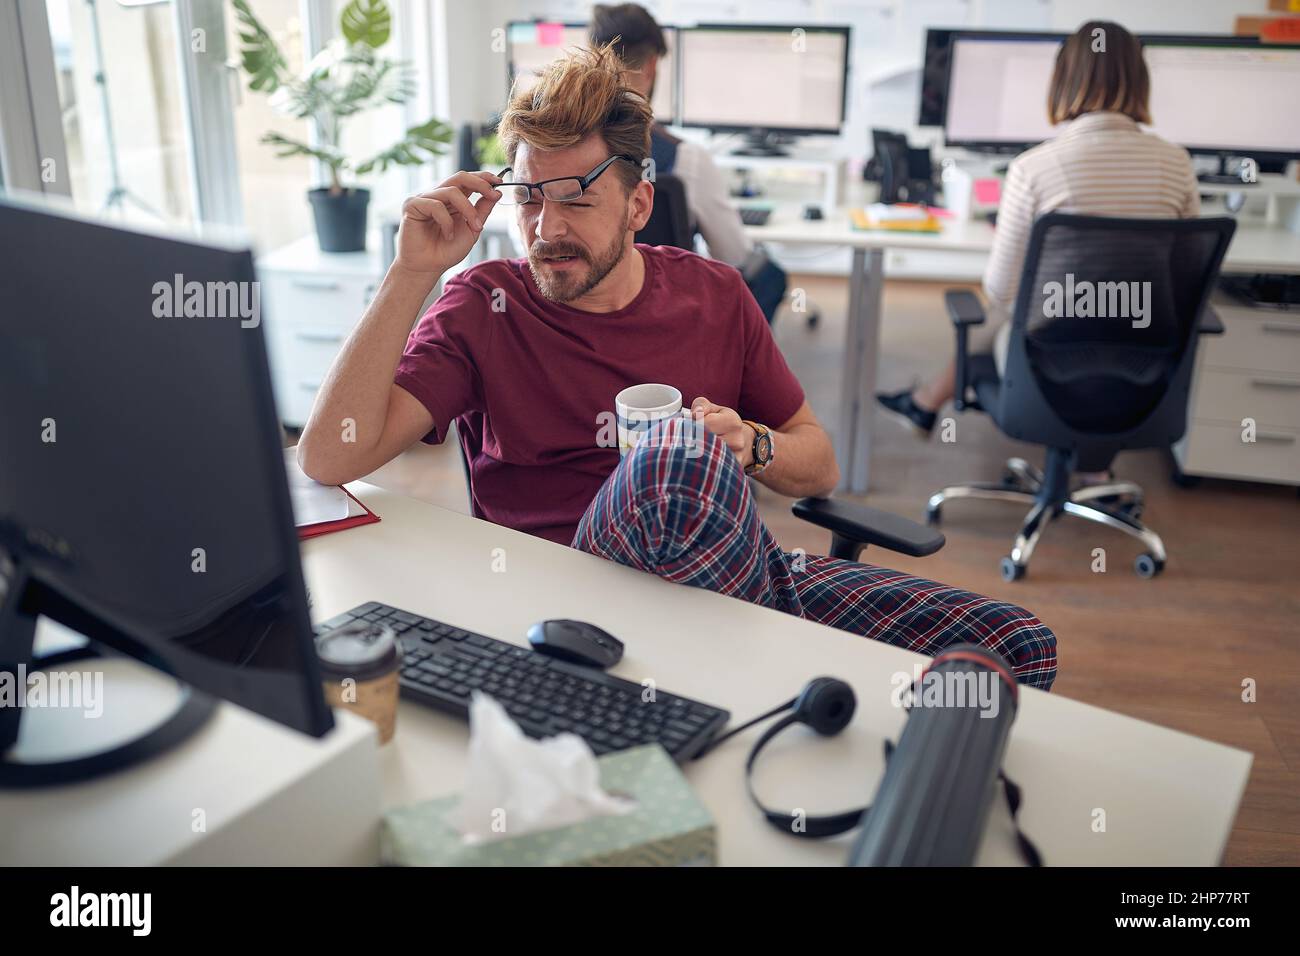 Un jeune homme est détendu tout en travaillant dans une atmosphère agréable au bureau. Employés, travail, bureau Banque D'Images